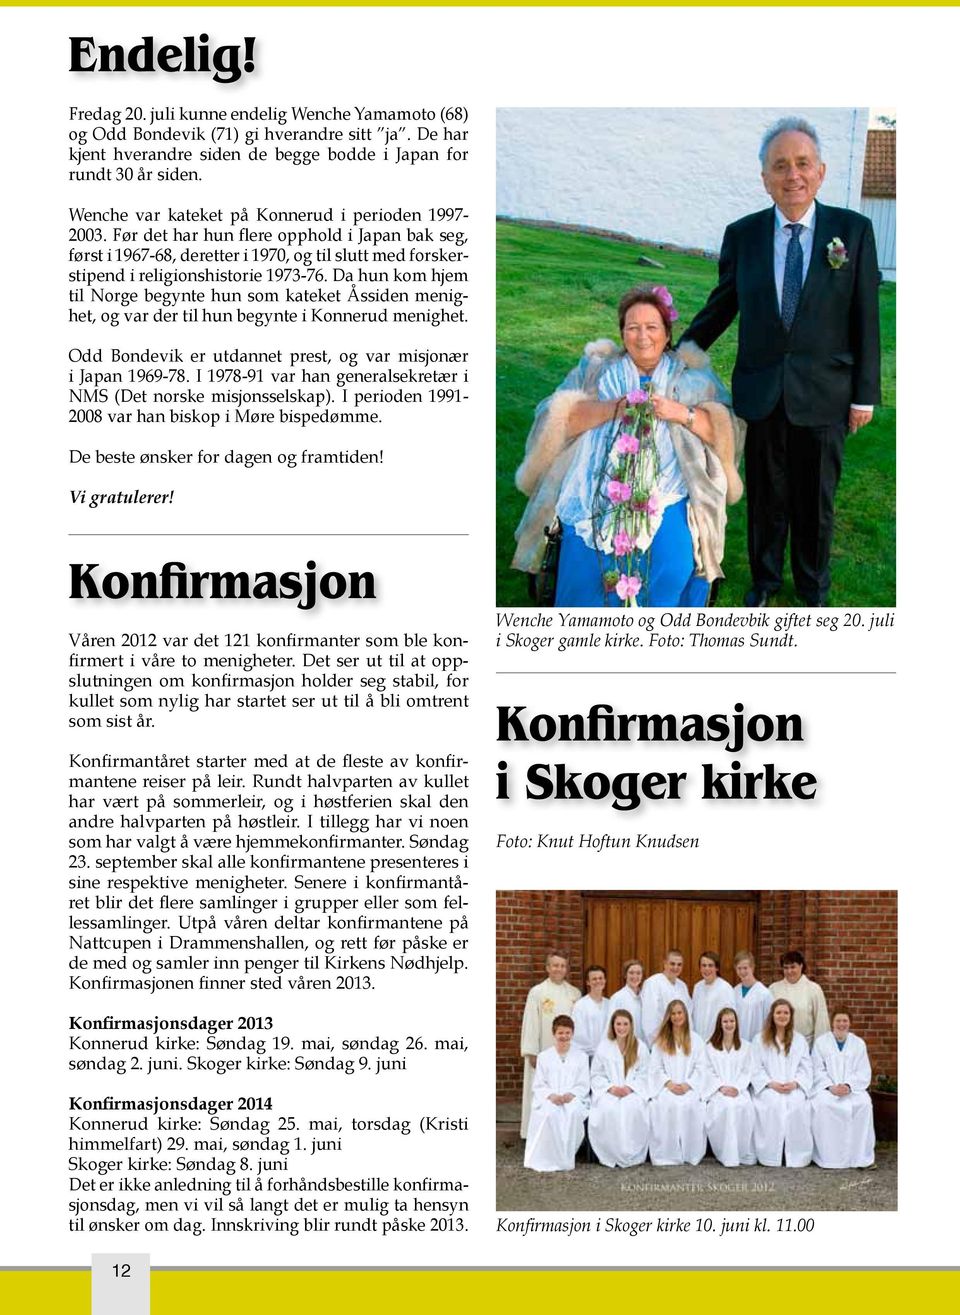 Da hun kom hjem til Norge begynte hun som kateket Åssiden menighet, og var der til hun begynte i Konnerud menighet. Odd Bondevik er utdannet prest, og var misjonær i Japan 1969-78.